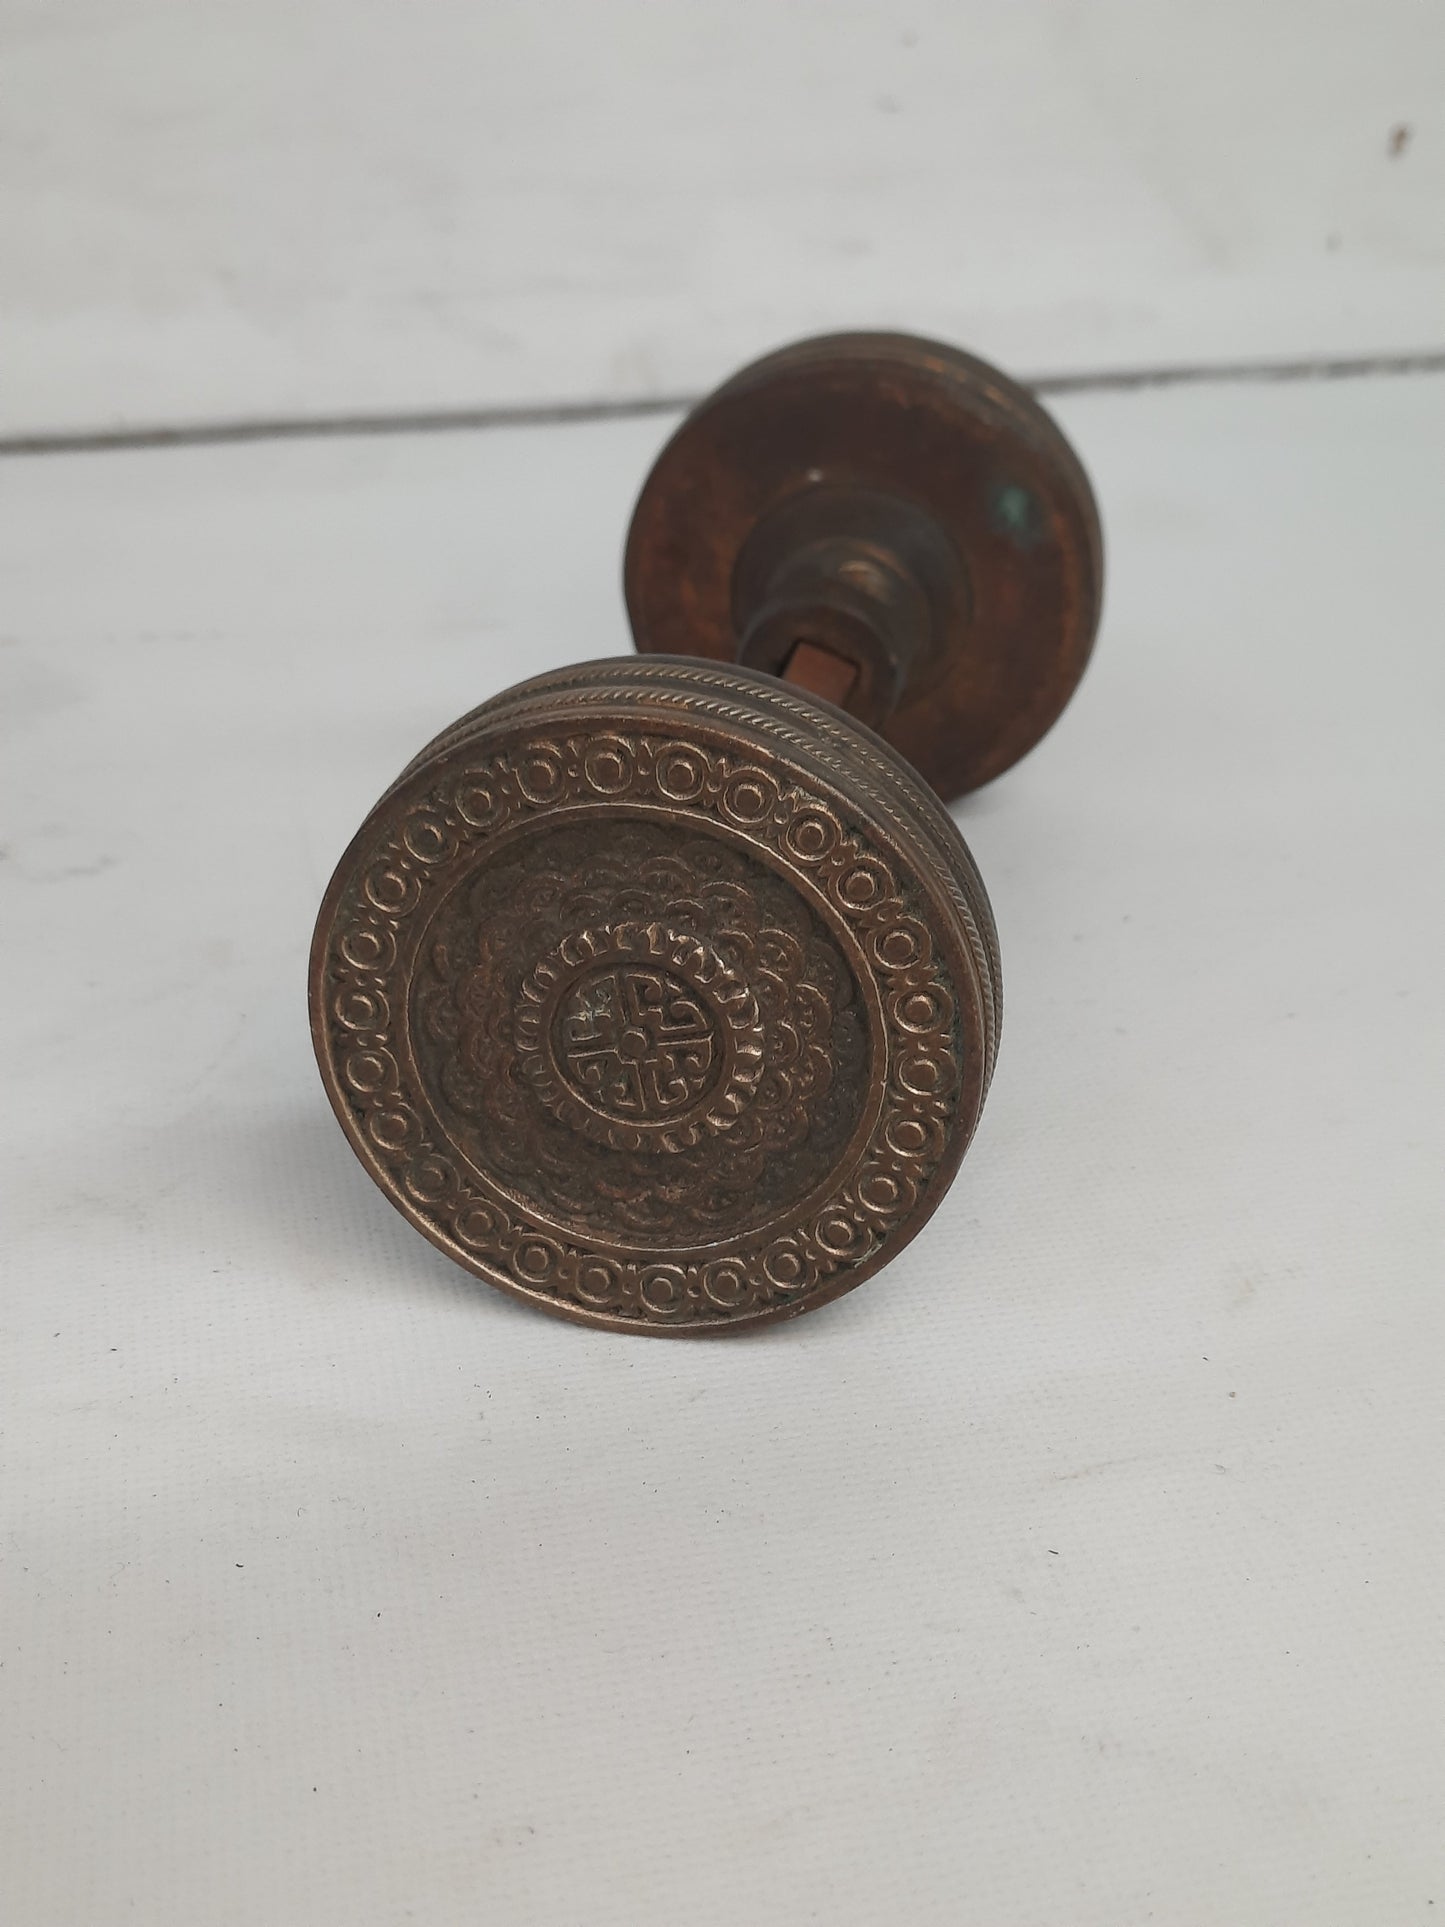 Antique Brocade Design Doorknob by Corbin c. 1884, Solid Bronze Ornate Doorknobs with Fish Scale Pattern 121606